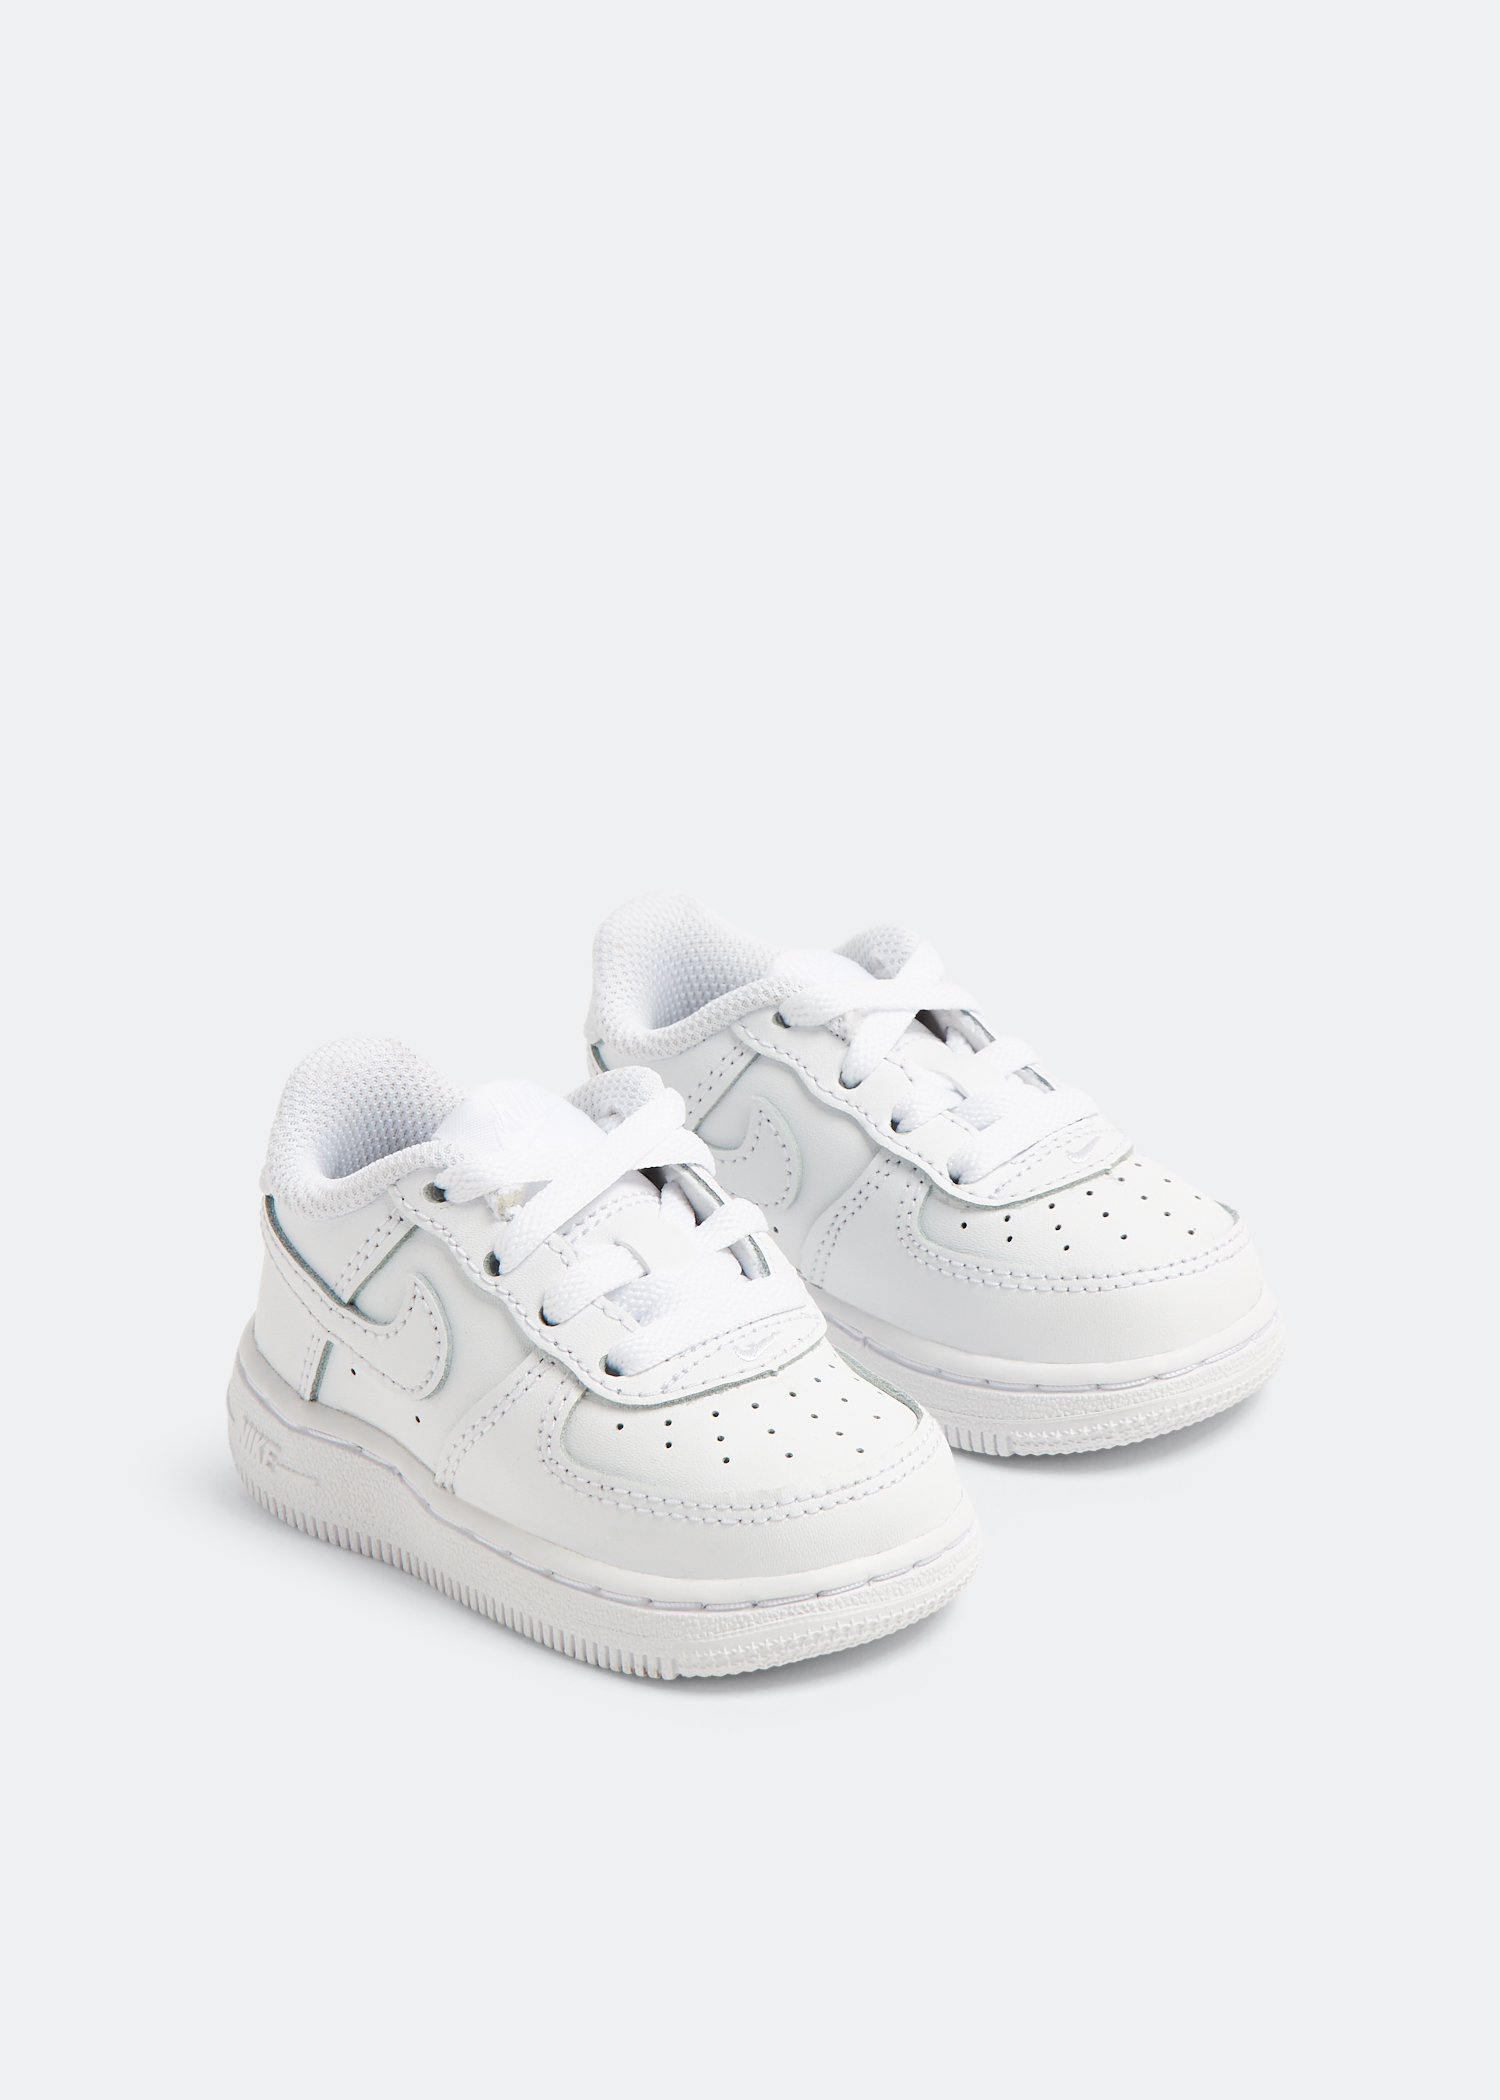 Nike Force 1 LV8 KSA Baby/Toddler Shoe